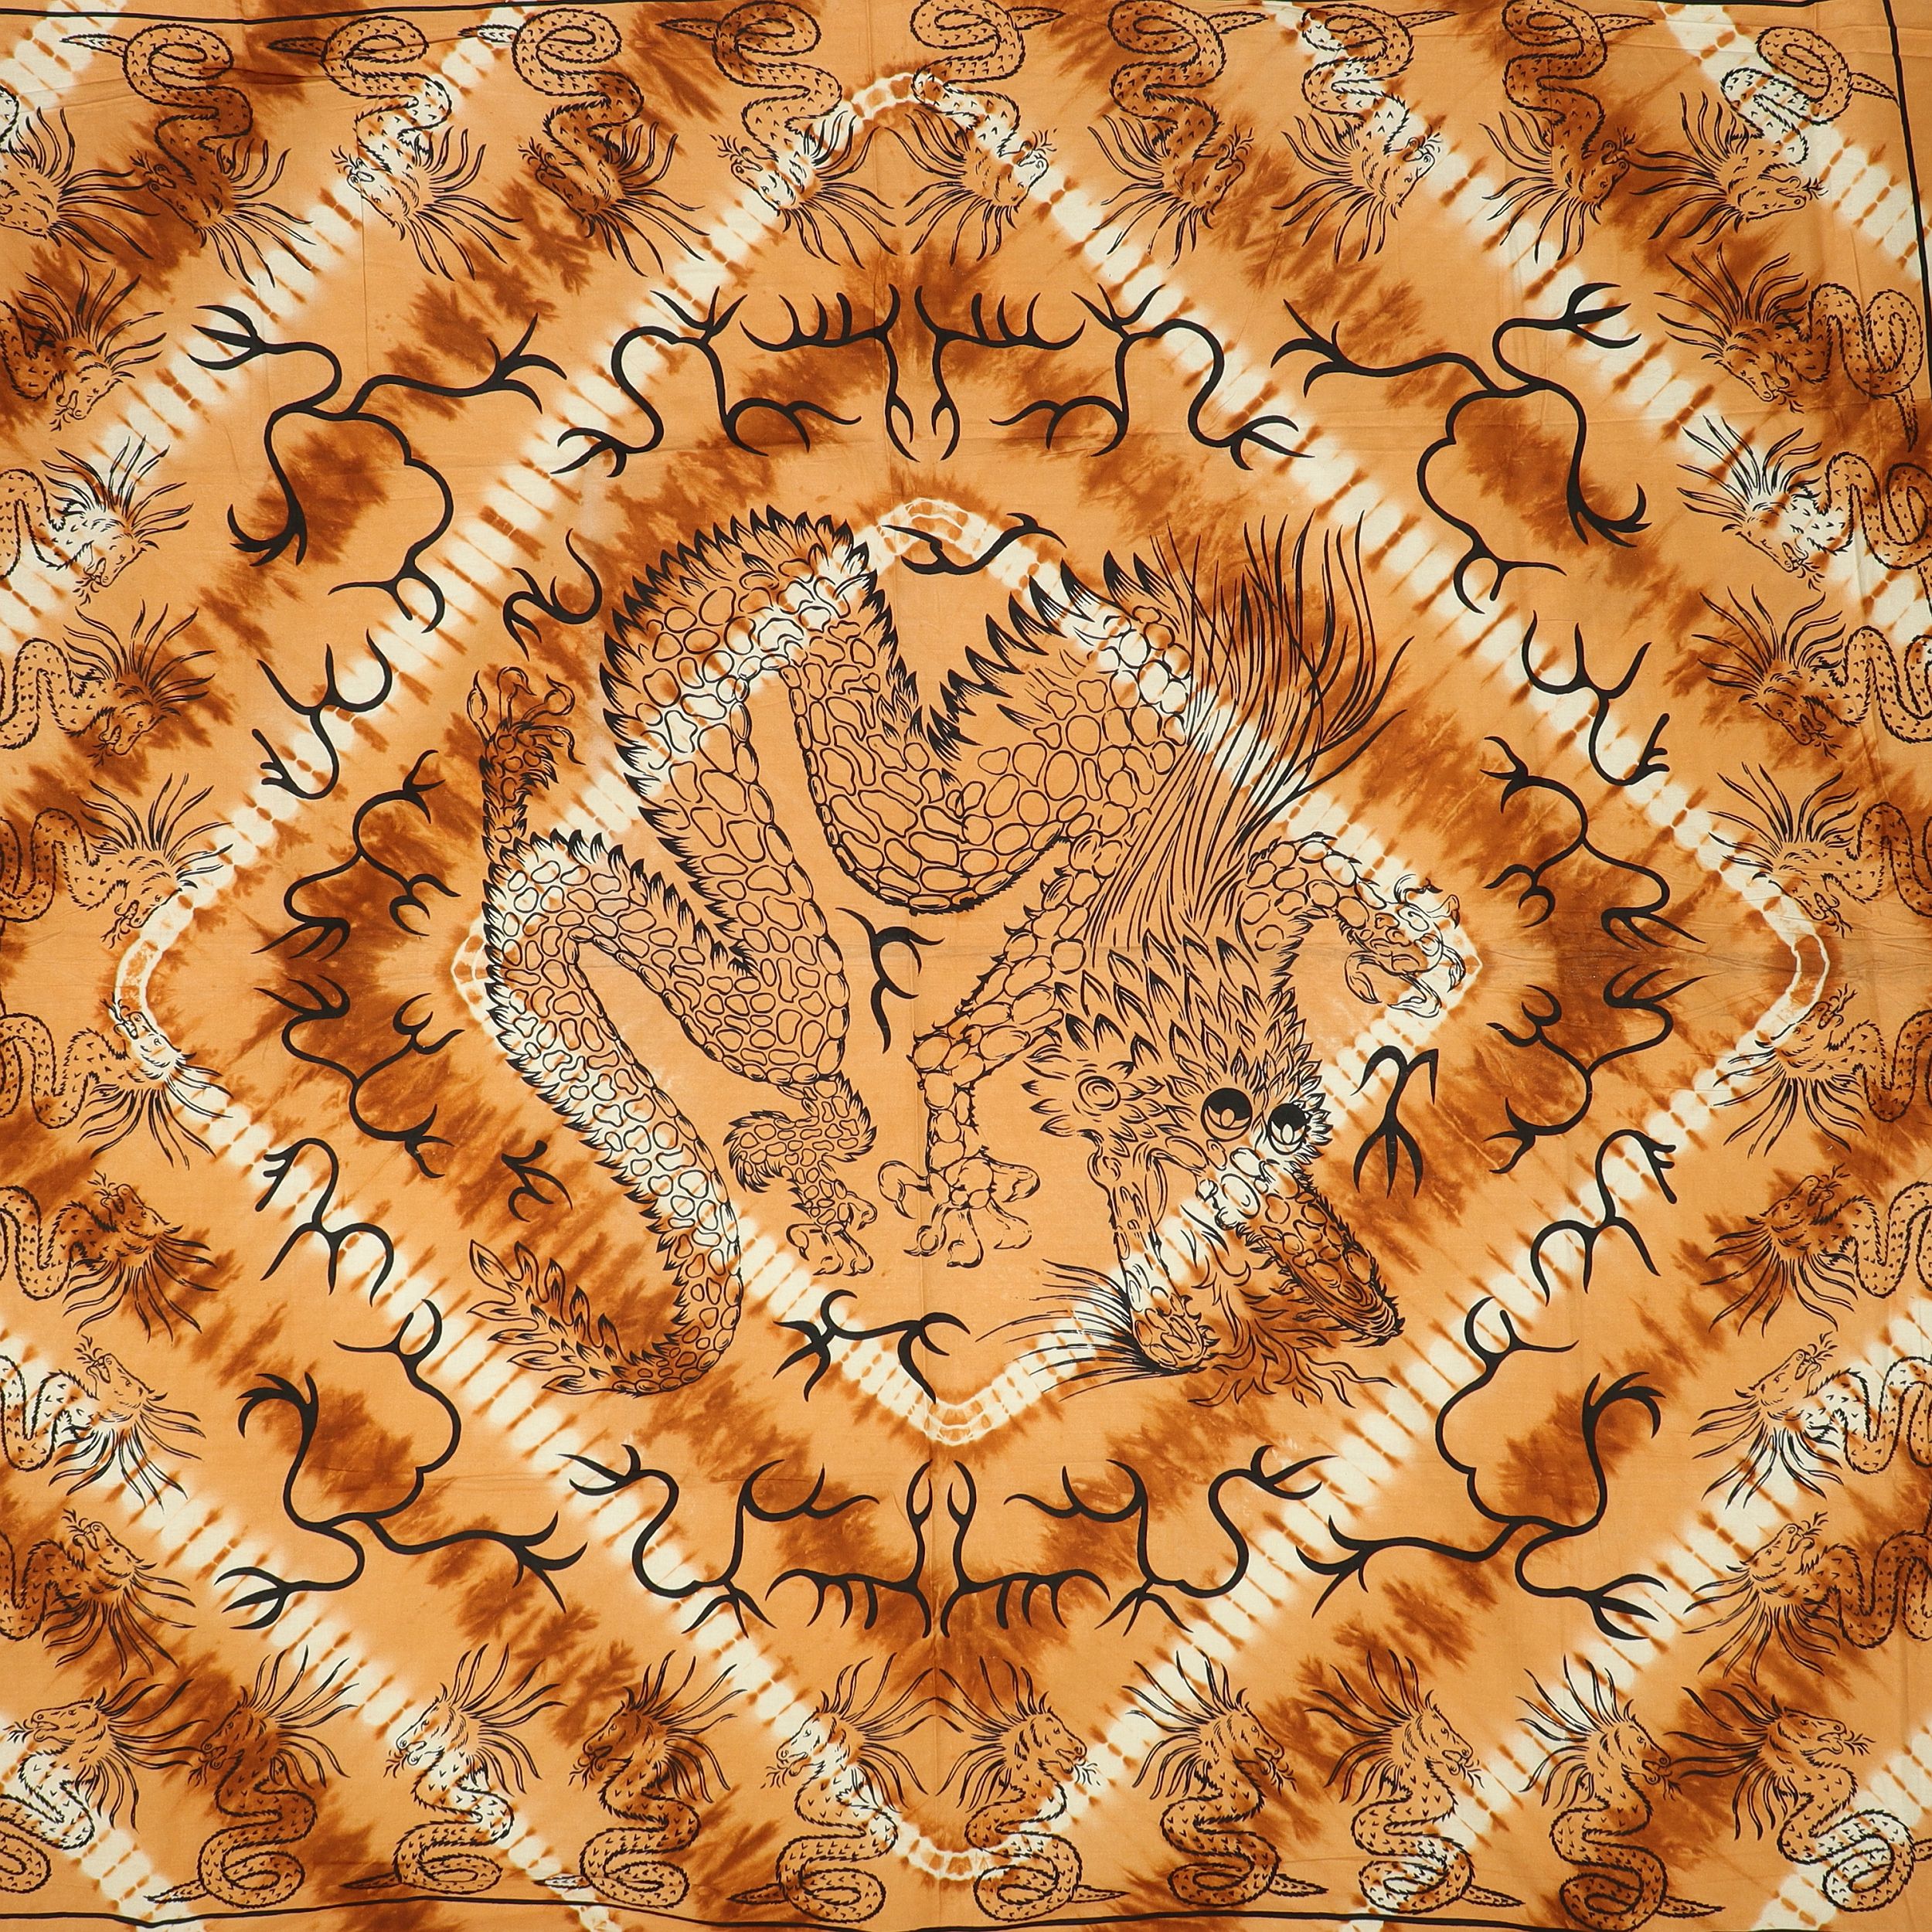 Wandtuch XXL 210x230 - keltischer Drache - 100% Baumwolle - detailreicher indischer Druck - mehrfarbig Batik - dekoratives Tuch, Wandbild, Tagesdecke, Bedcover, Vorhang, Picknick-Decke, Strandtuch